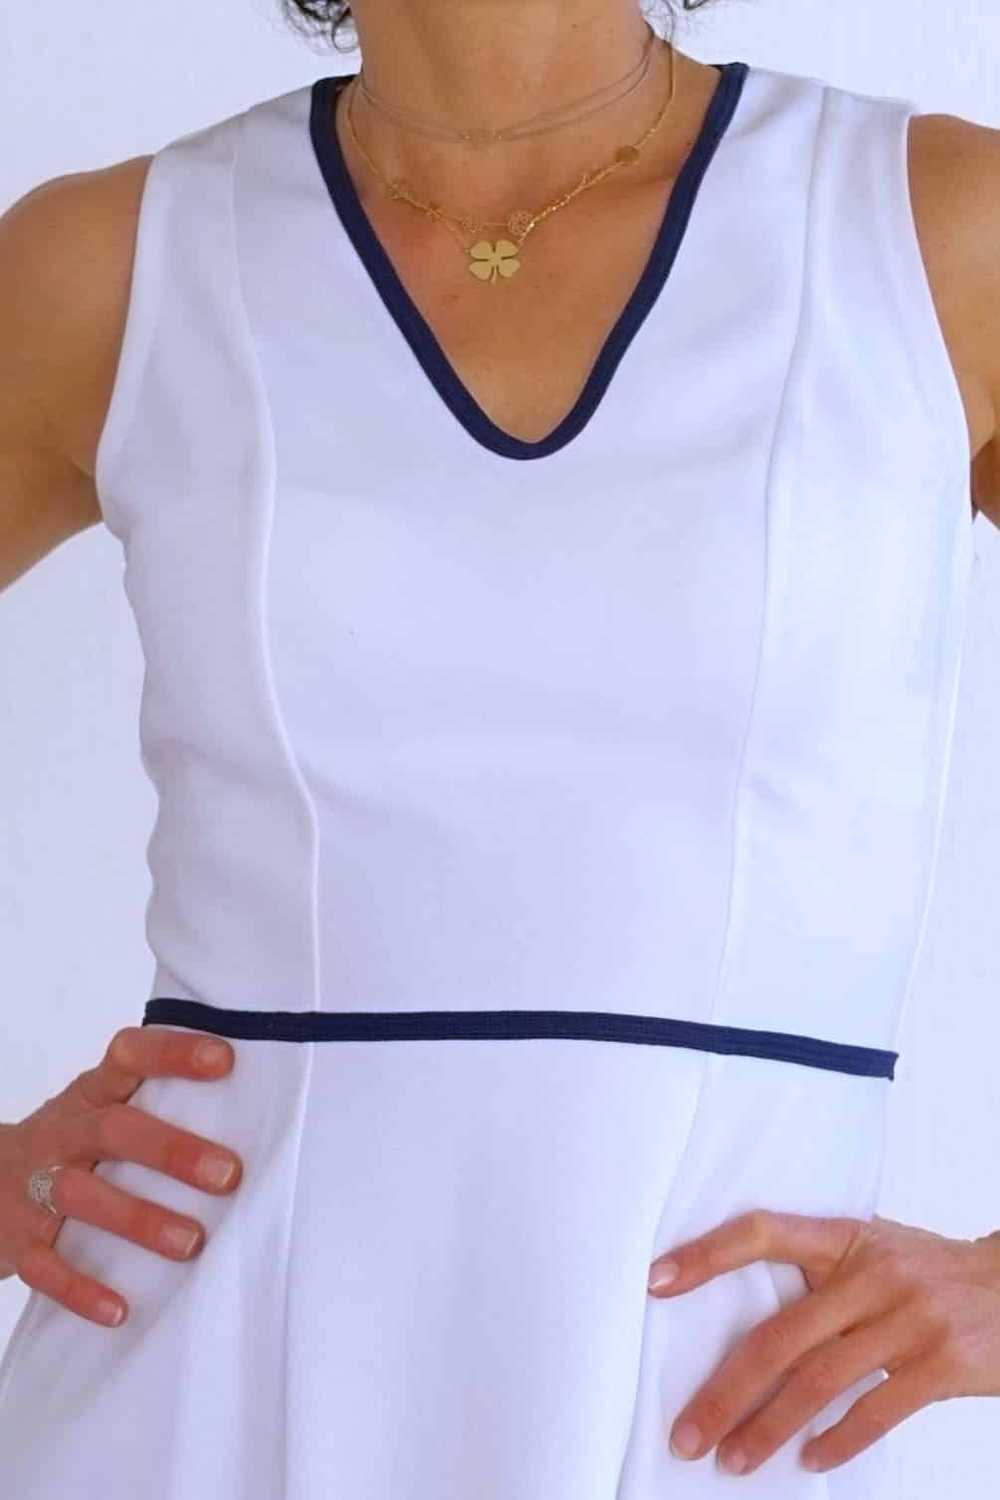 ELIETTE Reine 70's Tennis Dress - image 2